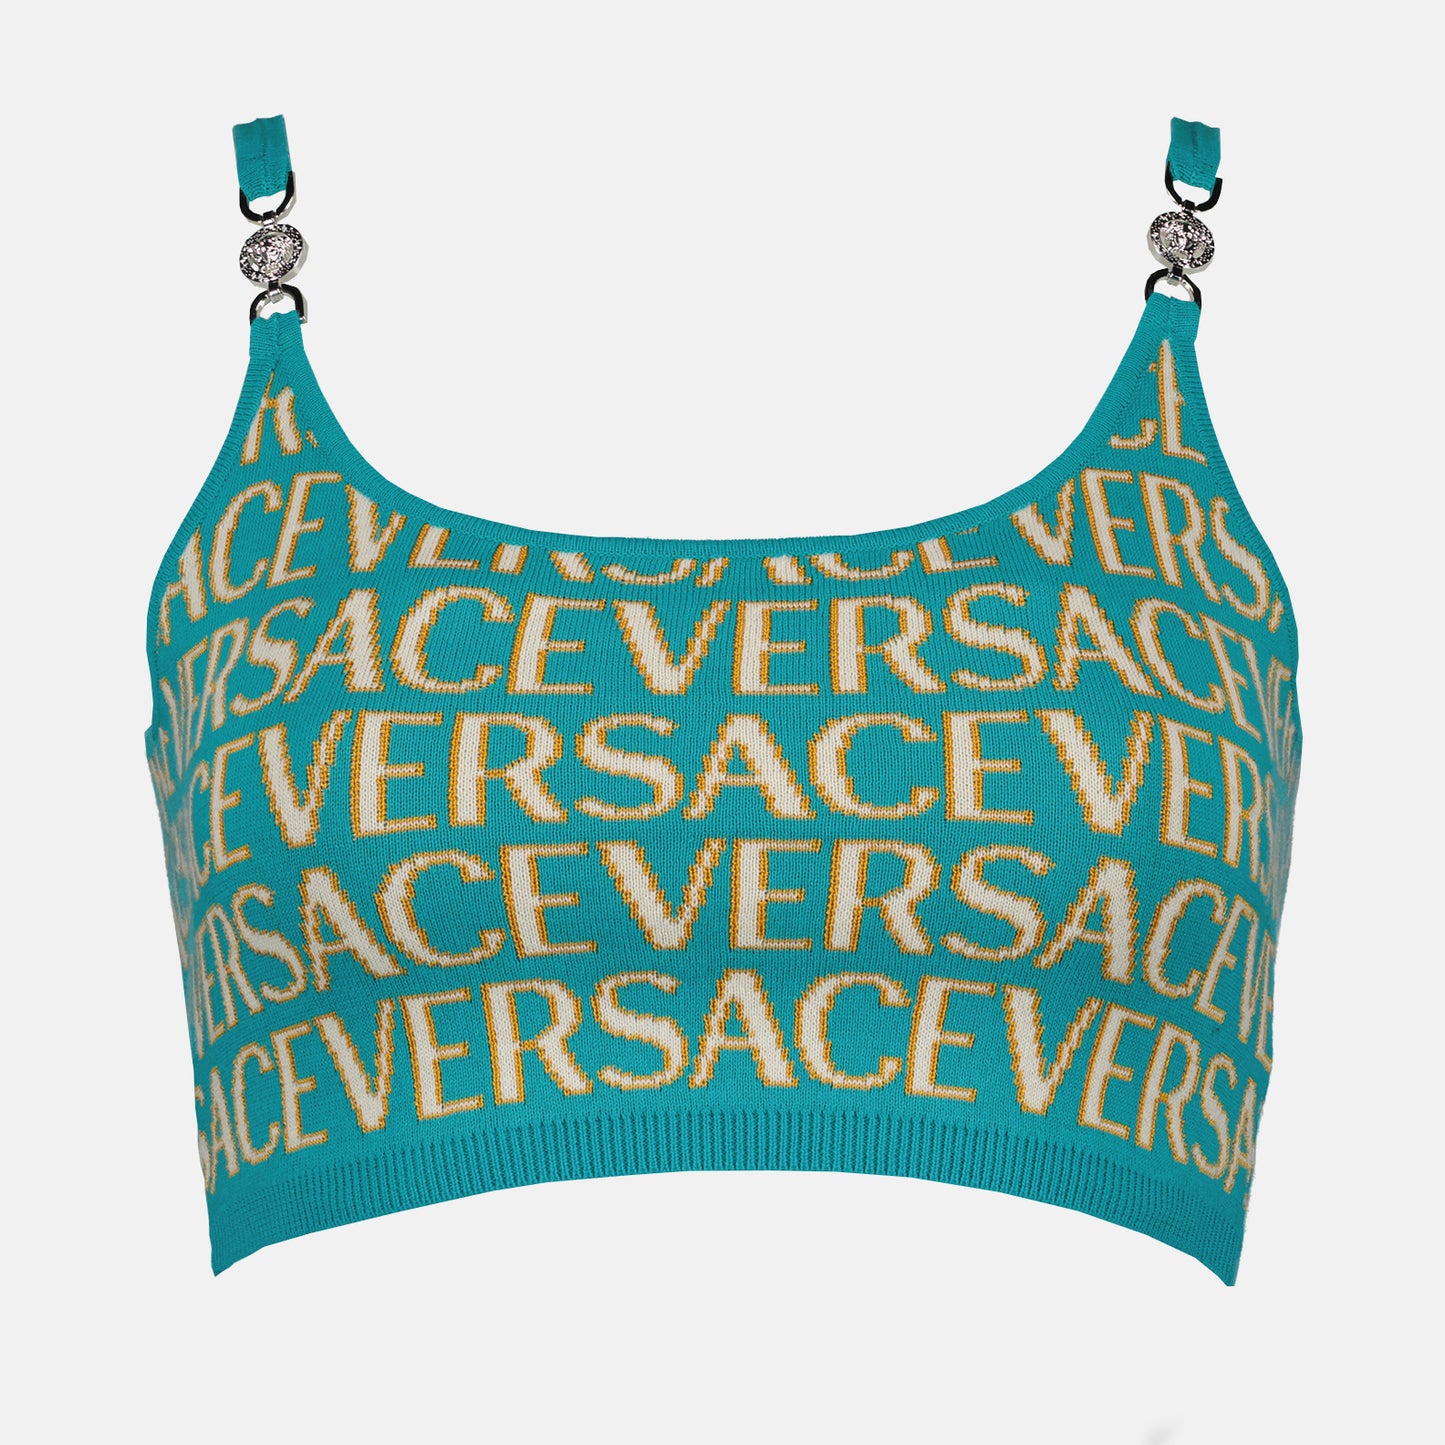 Versace Allover mesh crop top